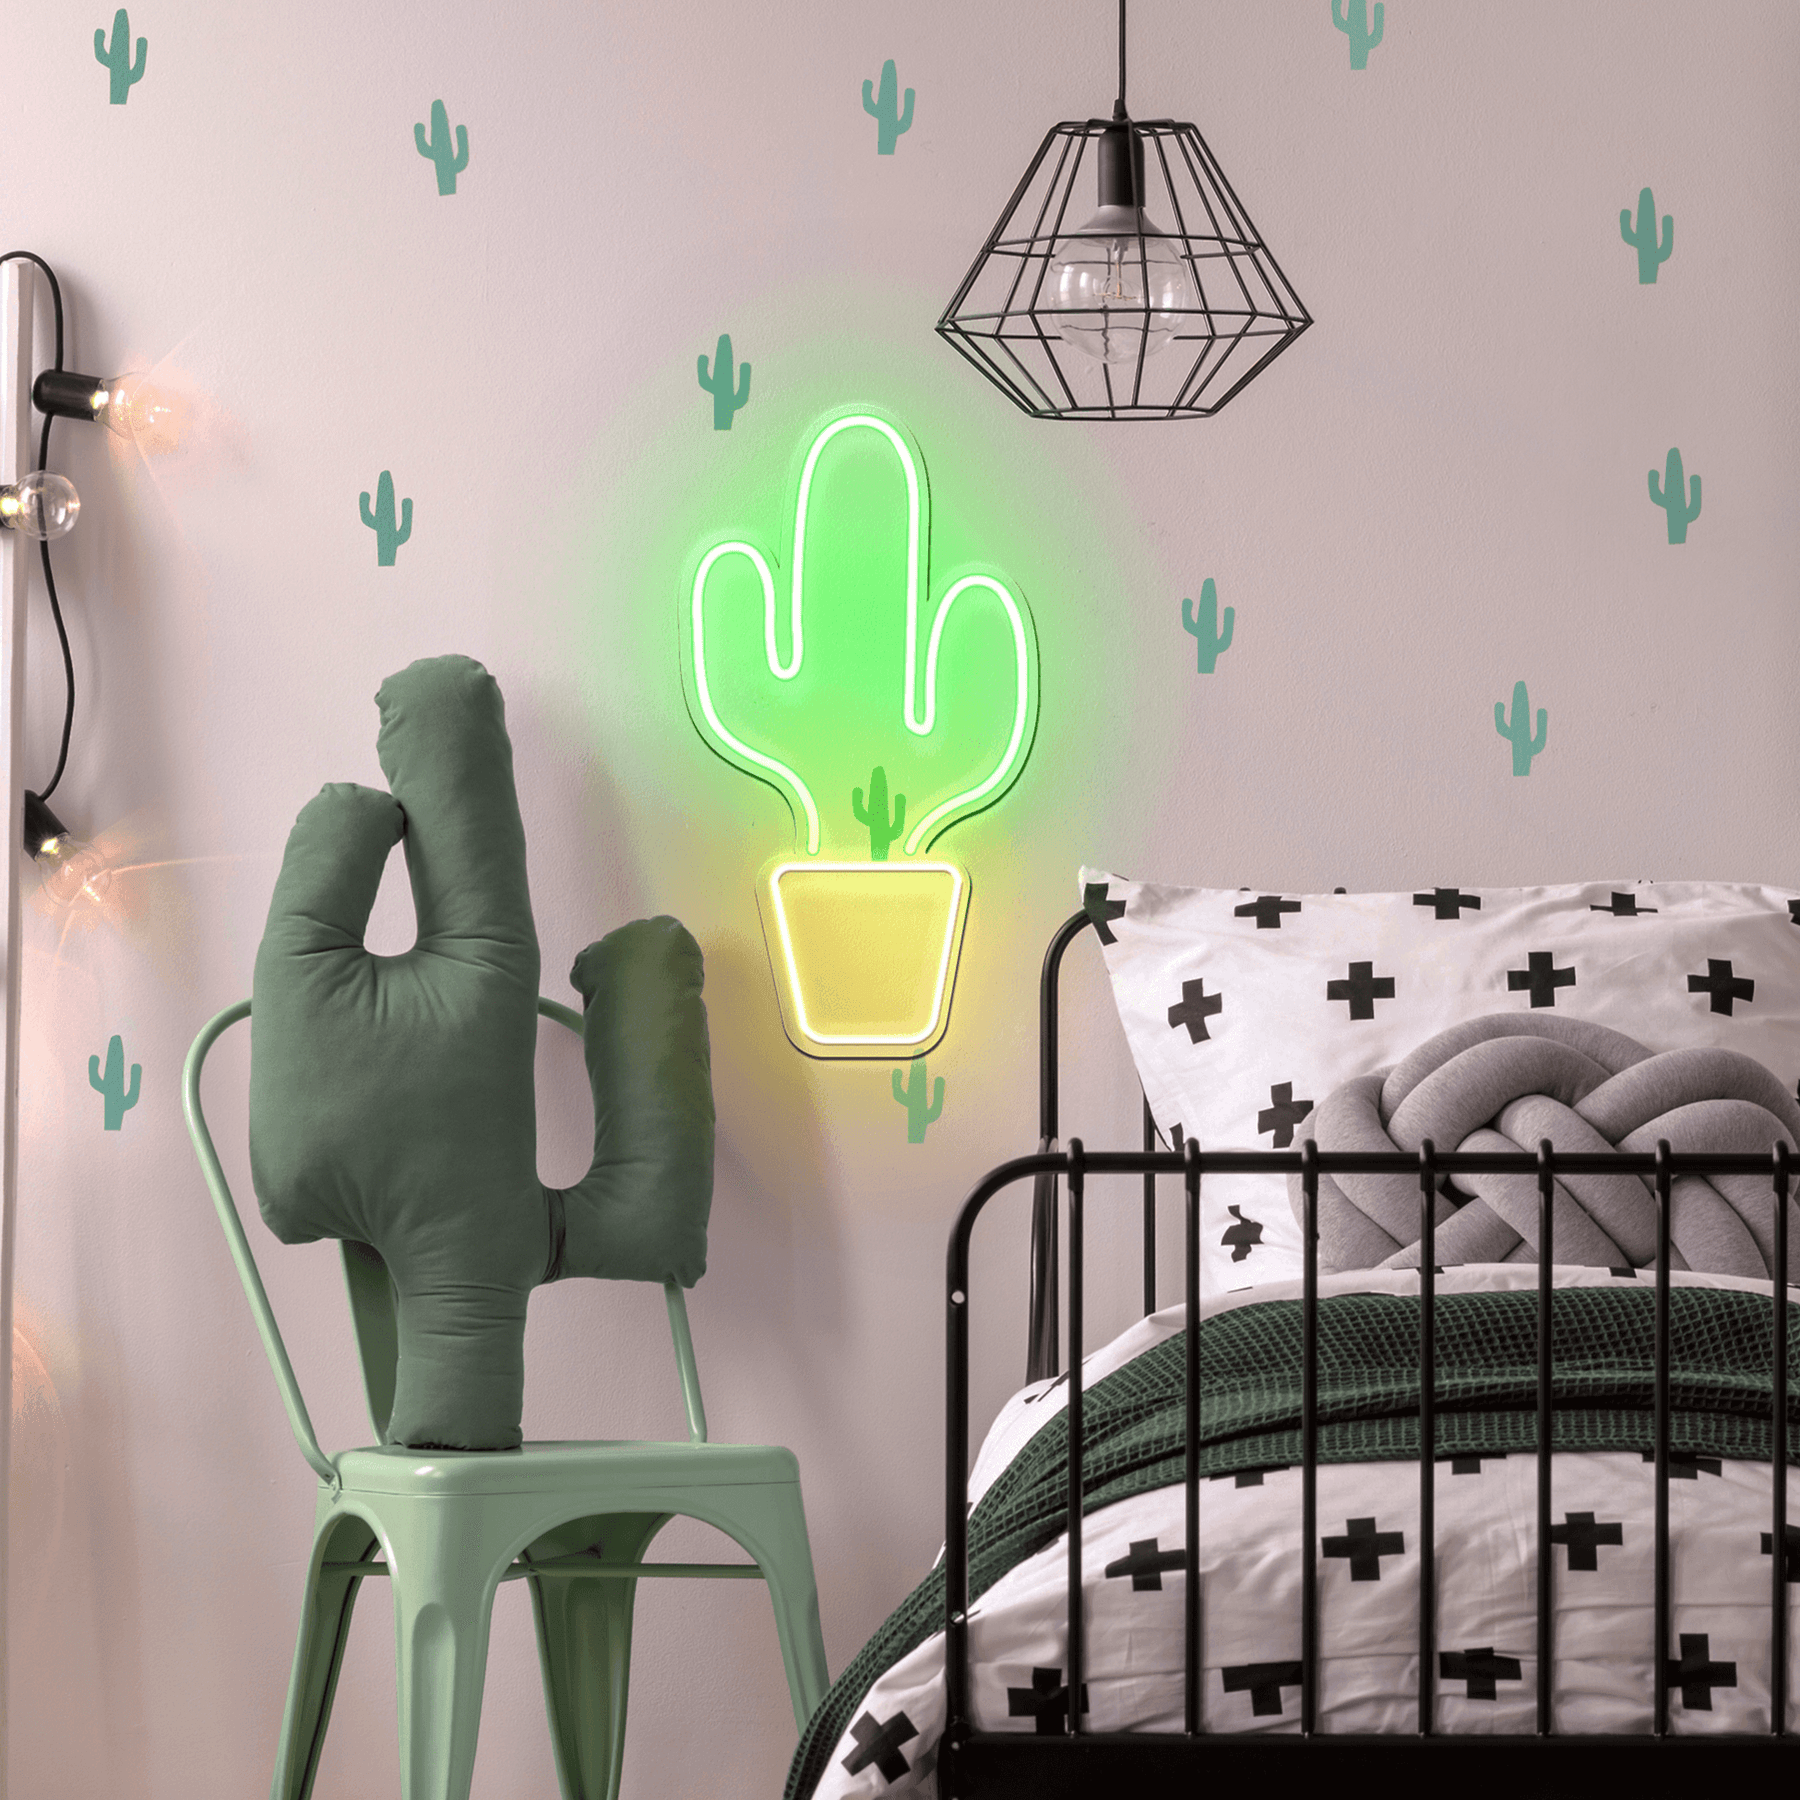 Cactus - Good Vibes Neon